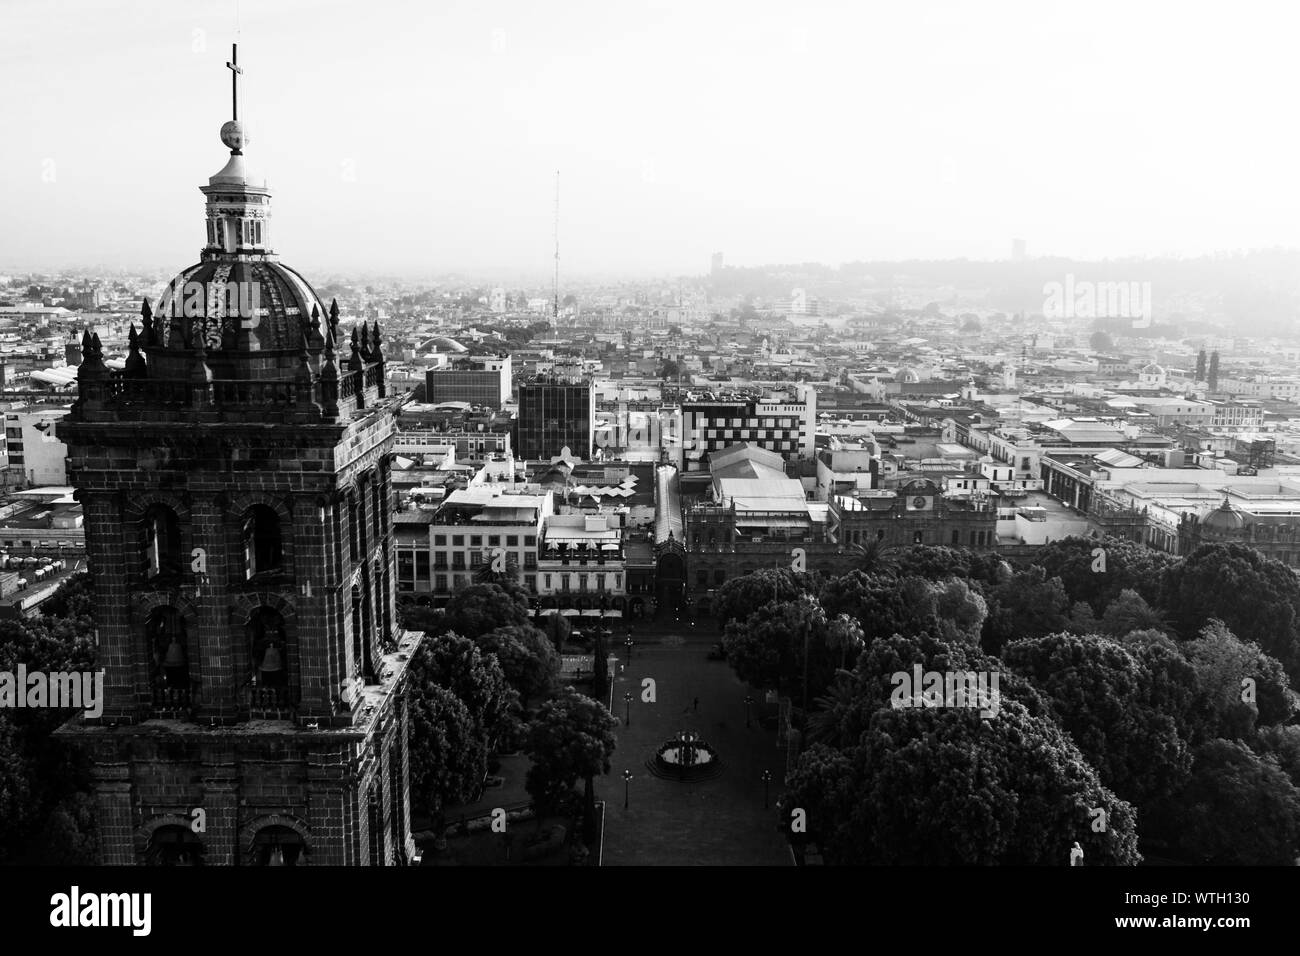 Puebla ville passent au lever du soleil et vue aérienne de la Basilique ou Cathédrale de Notre Dame de l'Immaculée Conception, est le siège épiscopal de l'archidiocèse de la ville historique et centre de zocalo Puebla, Mexique. Ils ont des traditions mexicaines : gastronomique, de l'architecture coloniale et la céramique. Carreaux talavera peintes ornent des édifices anciens. La cathédrale de Puebla, de style Renaissance, a une tour clocher donnant sur le Zocalo, la place centrale ou Place Zocalo. J'entre dans l'histoire. L'architecture est un UNESCO World Heritage Site. Attractions : Cathédrale, Temple de Notre-Dame de Concord, ancien Carolino Banque D'Images